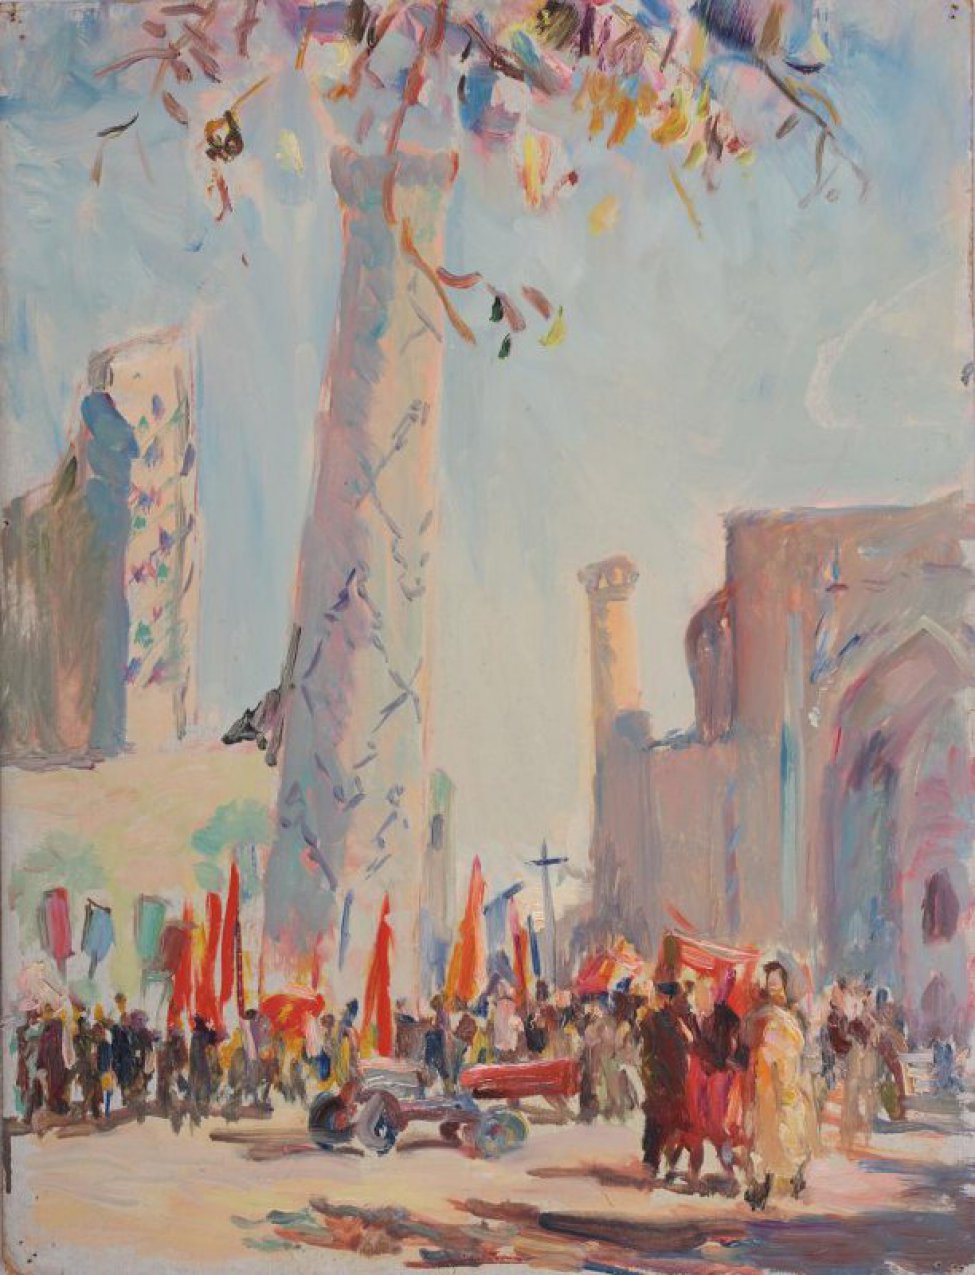 Перед мусульманскими храмами с минаретами - многофигурная композиция с флагами; в центре изображен грузовик.